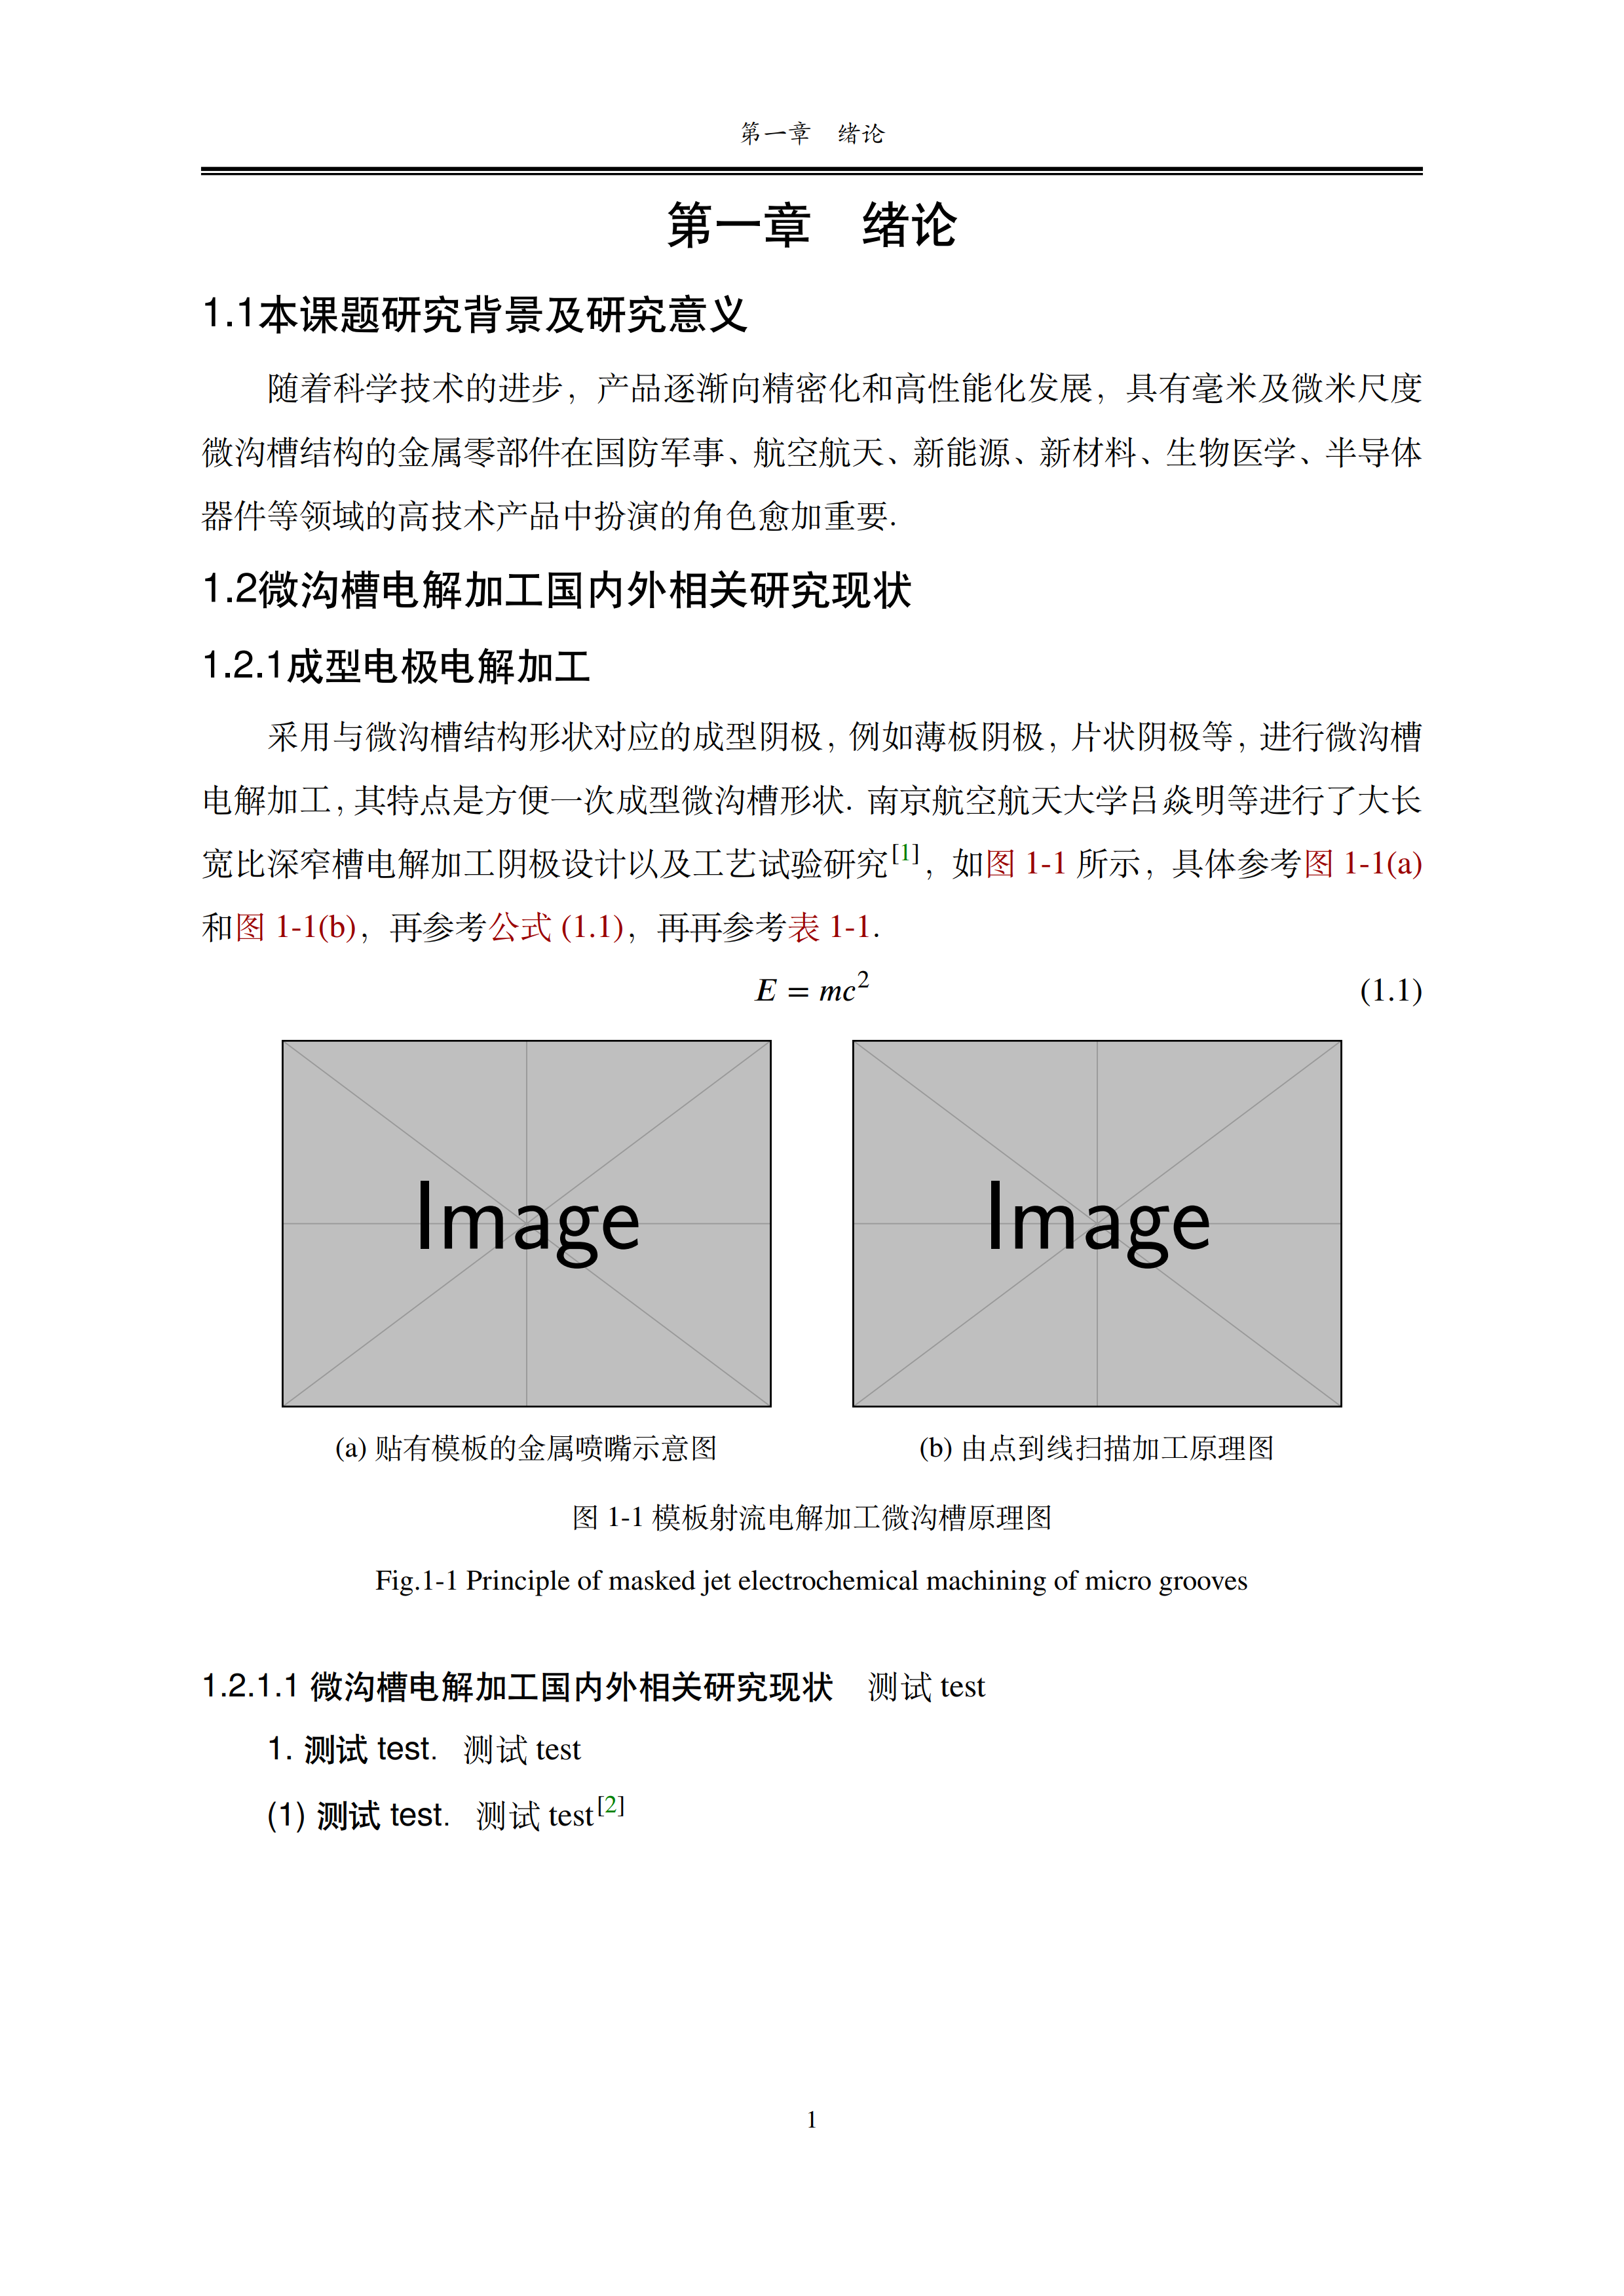 广东工业大学硕博学位论文 LaTeX 模板（预测试版）